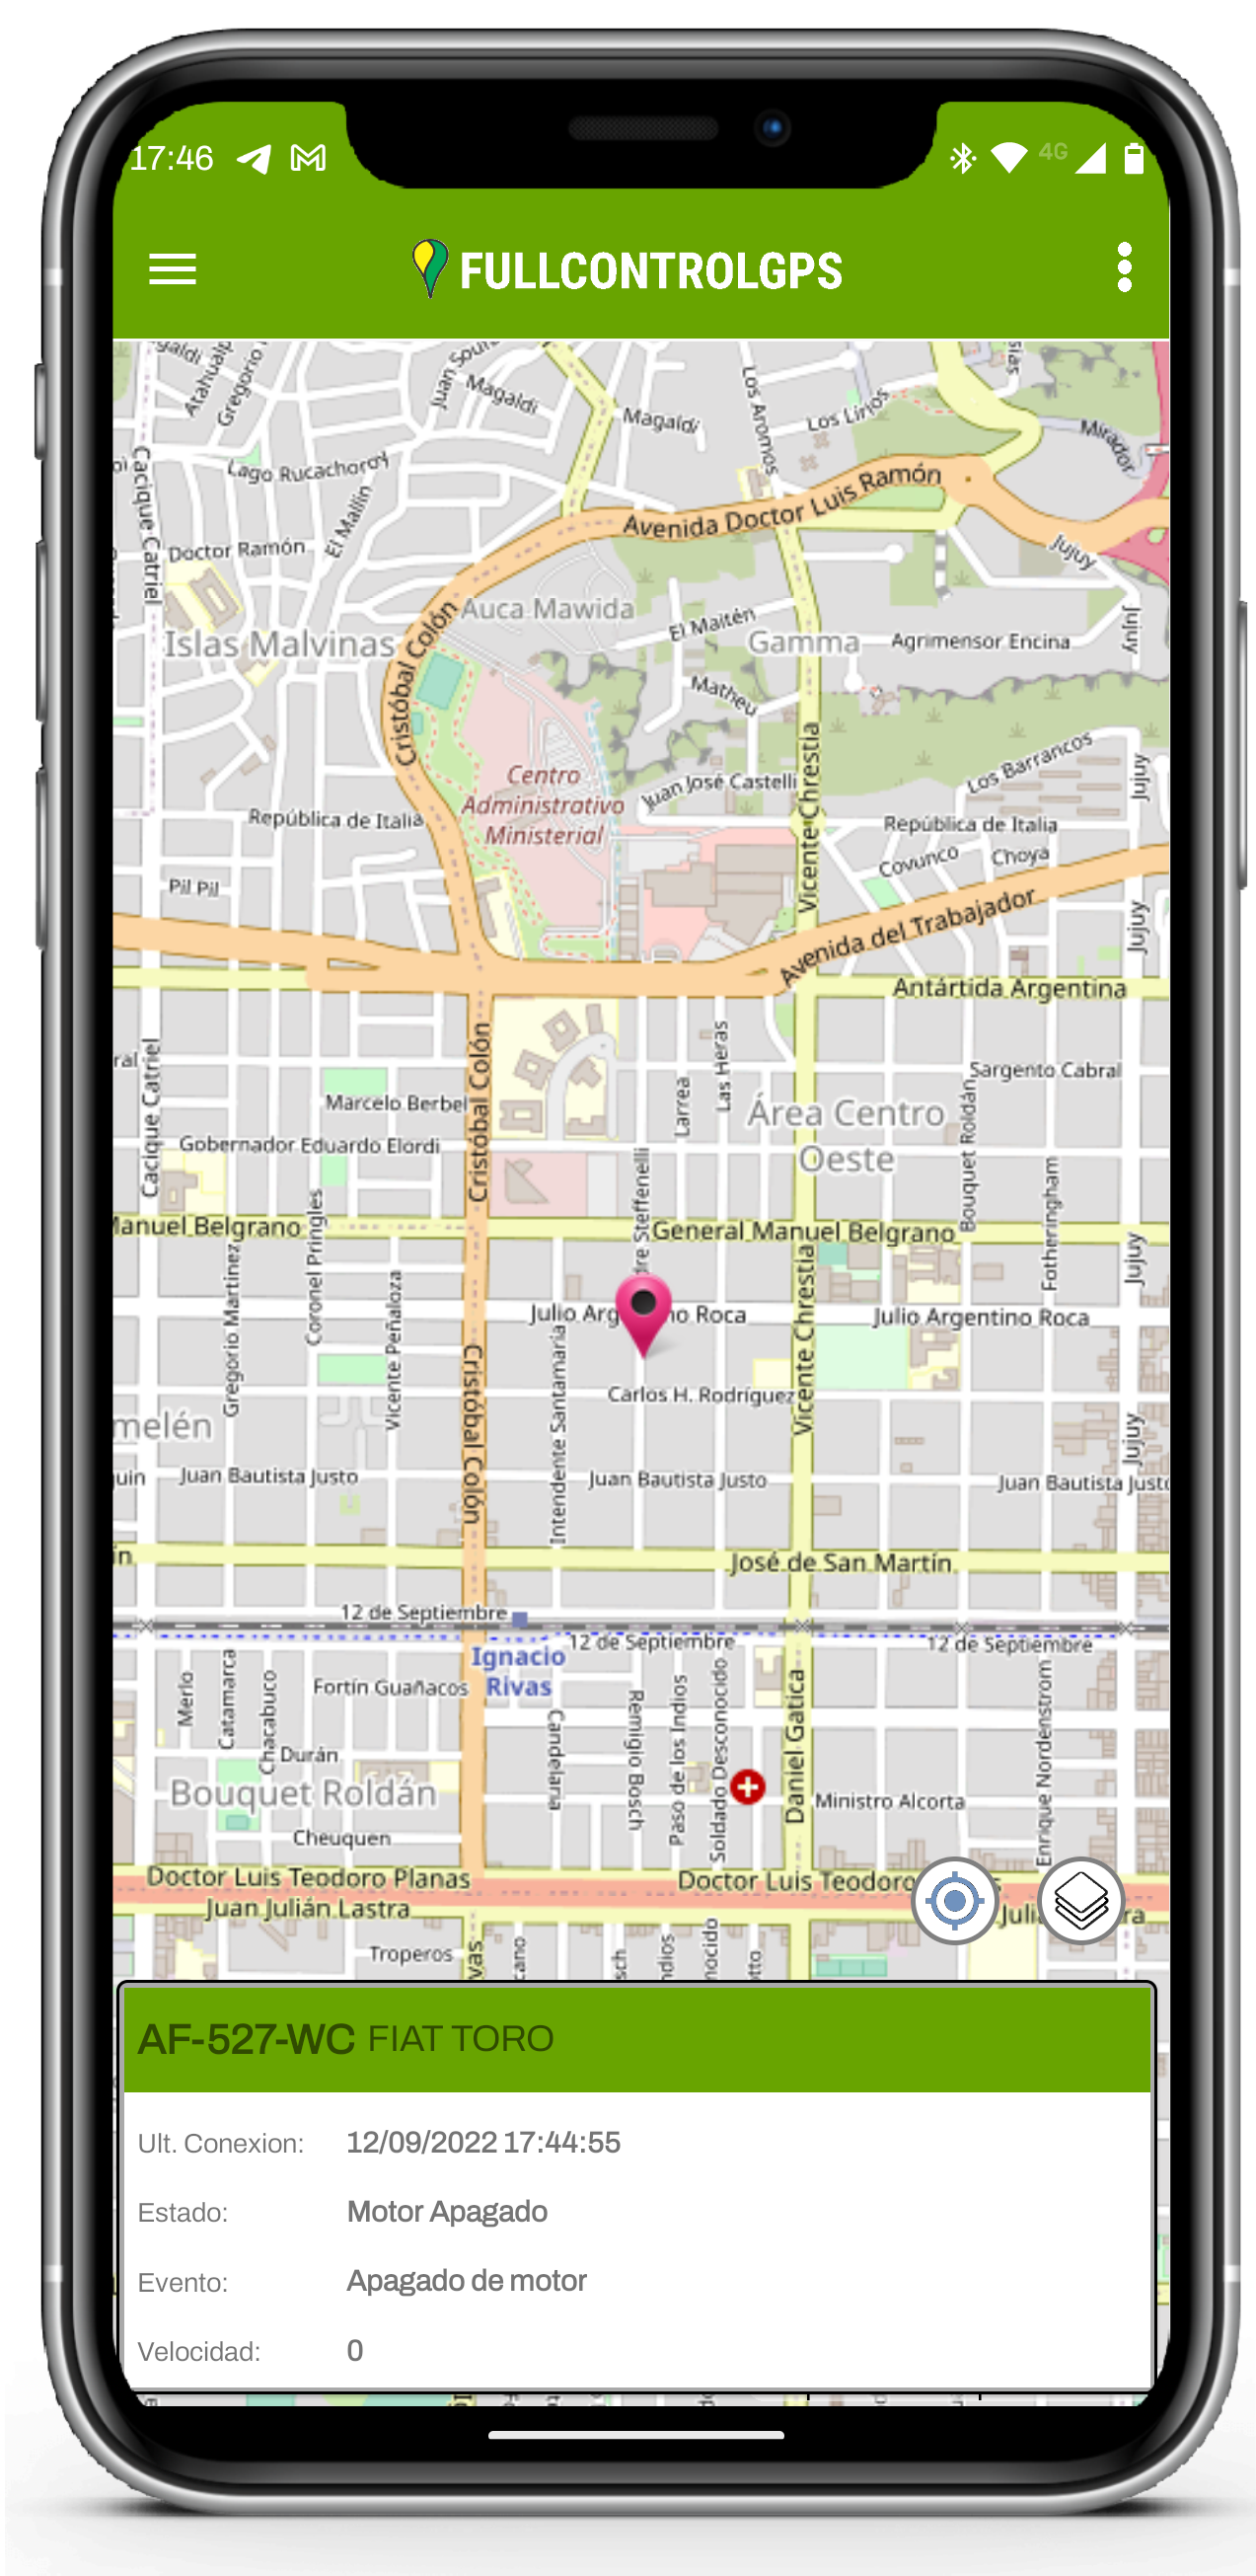 Captura de Pantalla de la Aplicacion para Android dodne se puede ver una notificación.